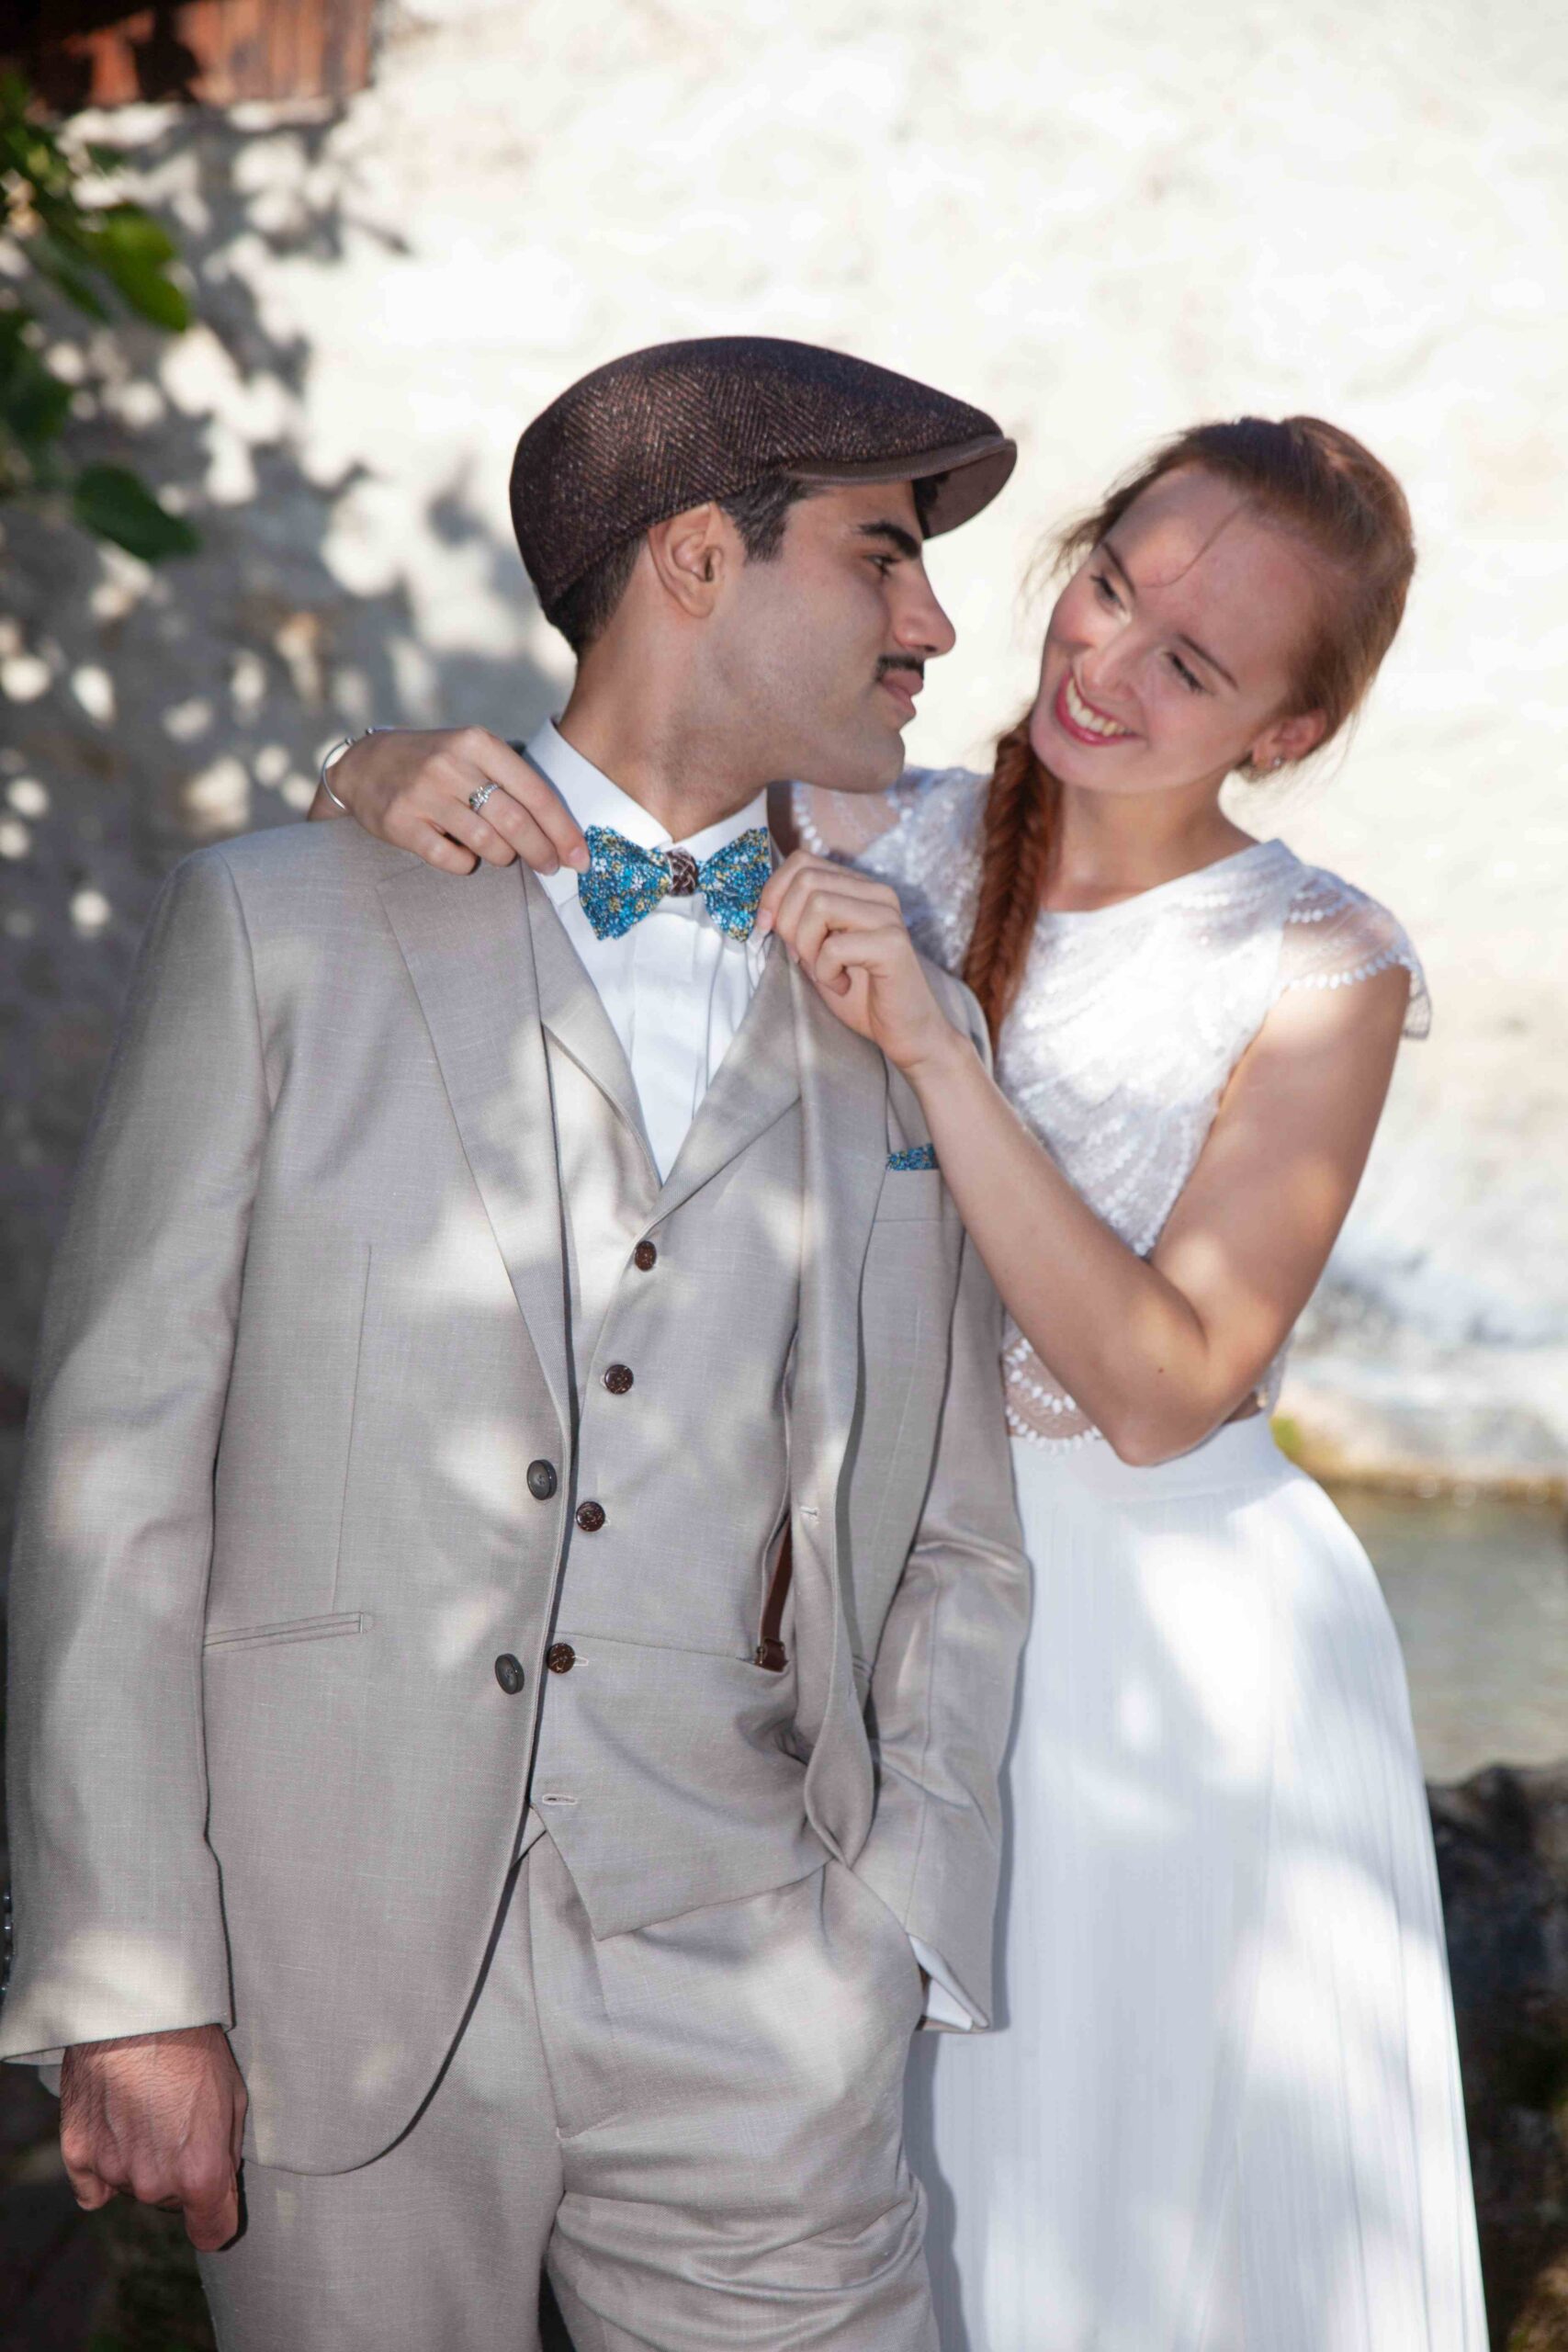 Costume Prudent costume de mariage Grenoble couleur lin et avec un style champêtre, bohème